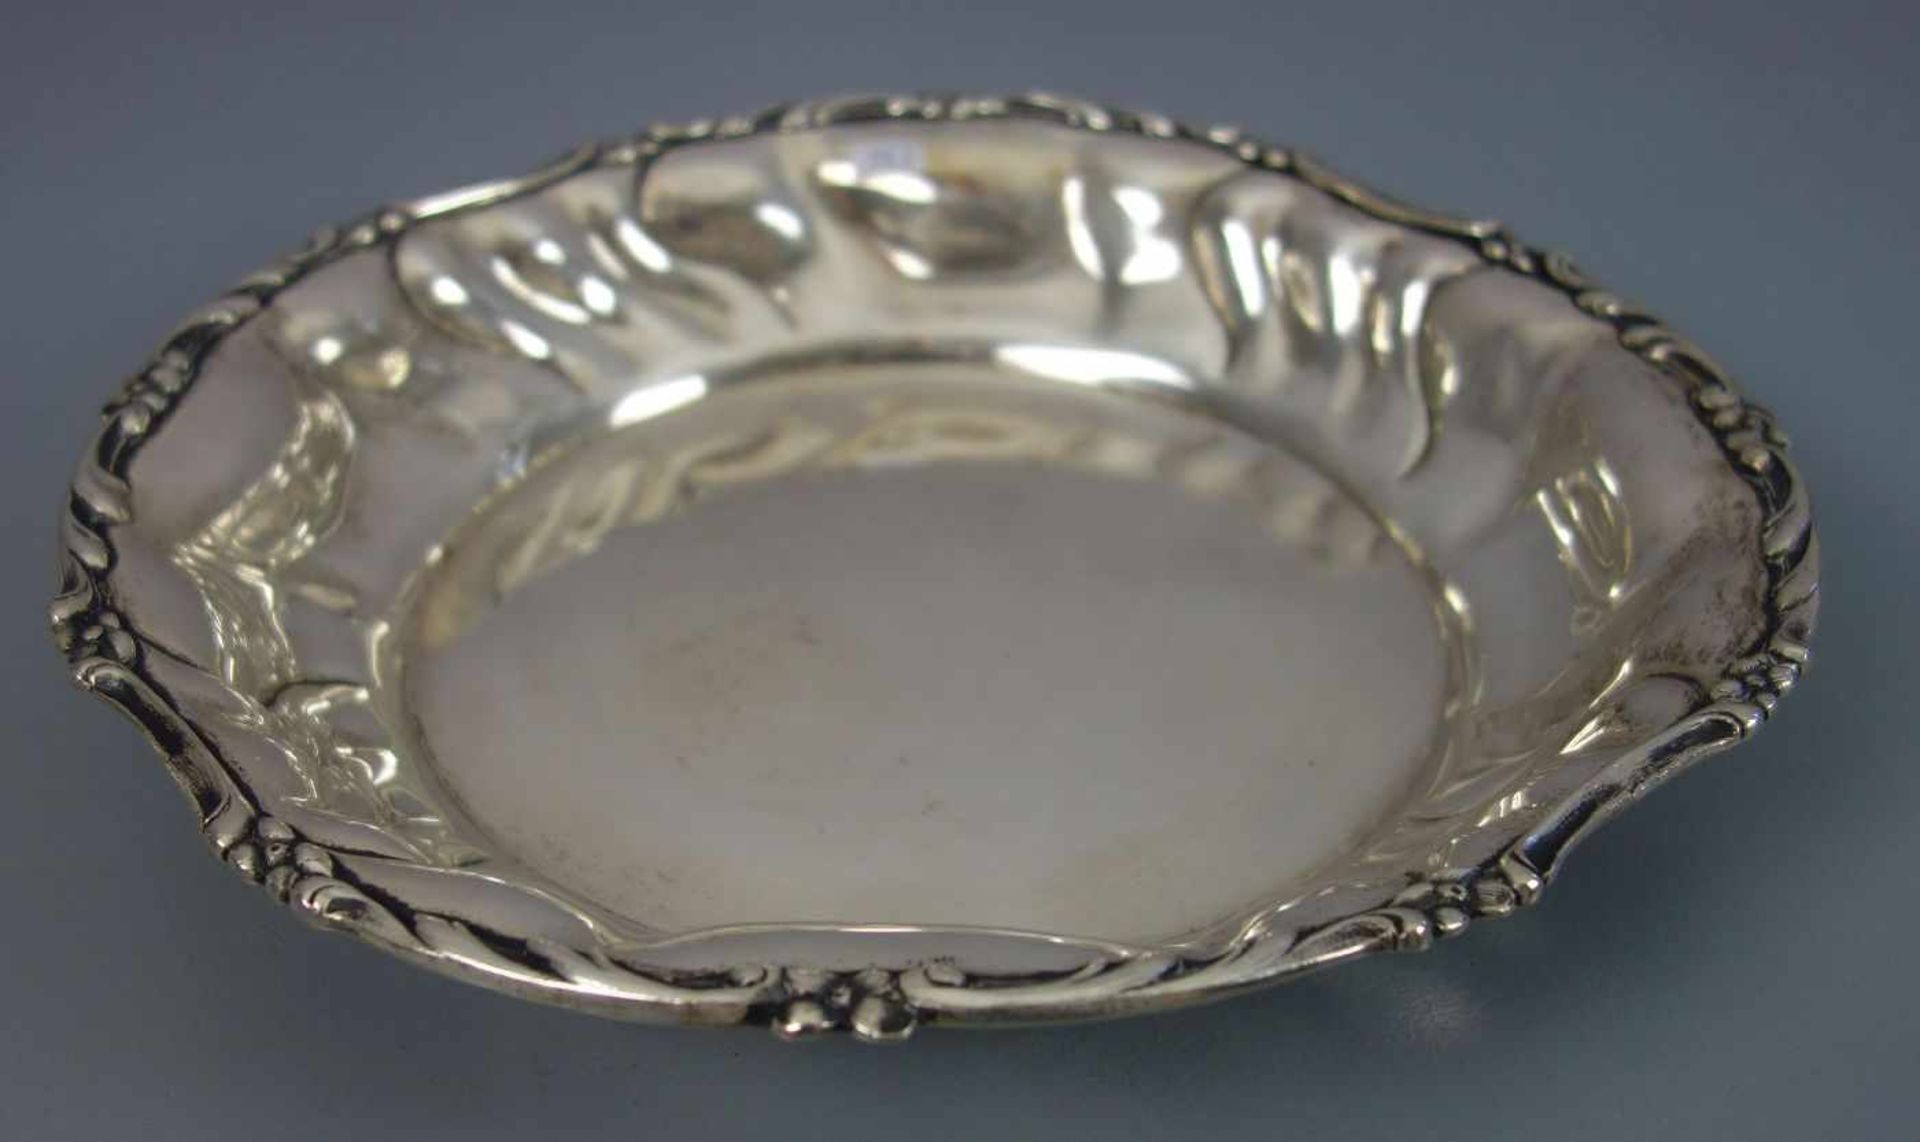 SILBERNE SCHALE / silver bowl, 800er Silber (625 g), gepunzt mit Halbmond, Krone, Feingehaltsangabe, - Image 2 of 3